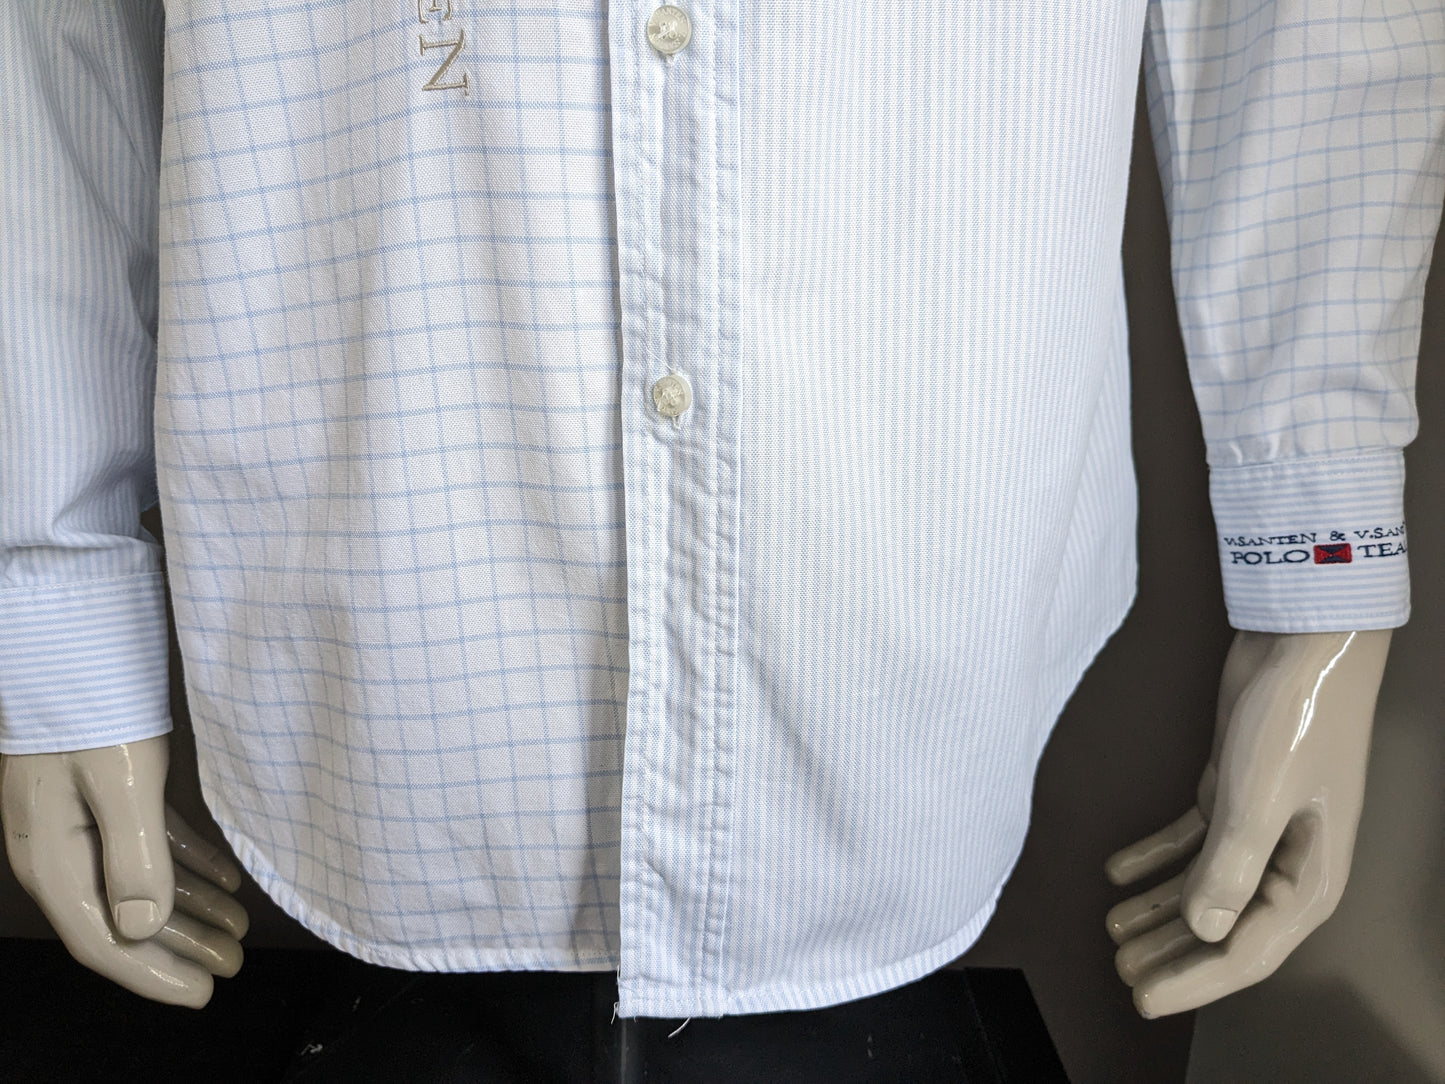 Van Santen e camicia di Van Santen. Blue bianco colorato con applicazioni. Taglia L.